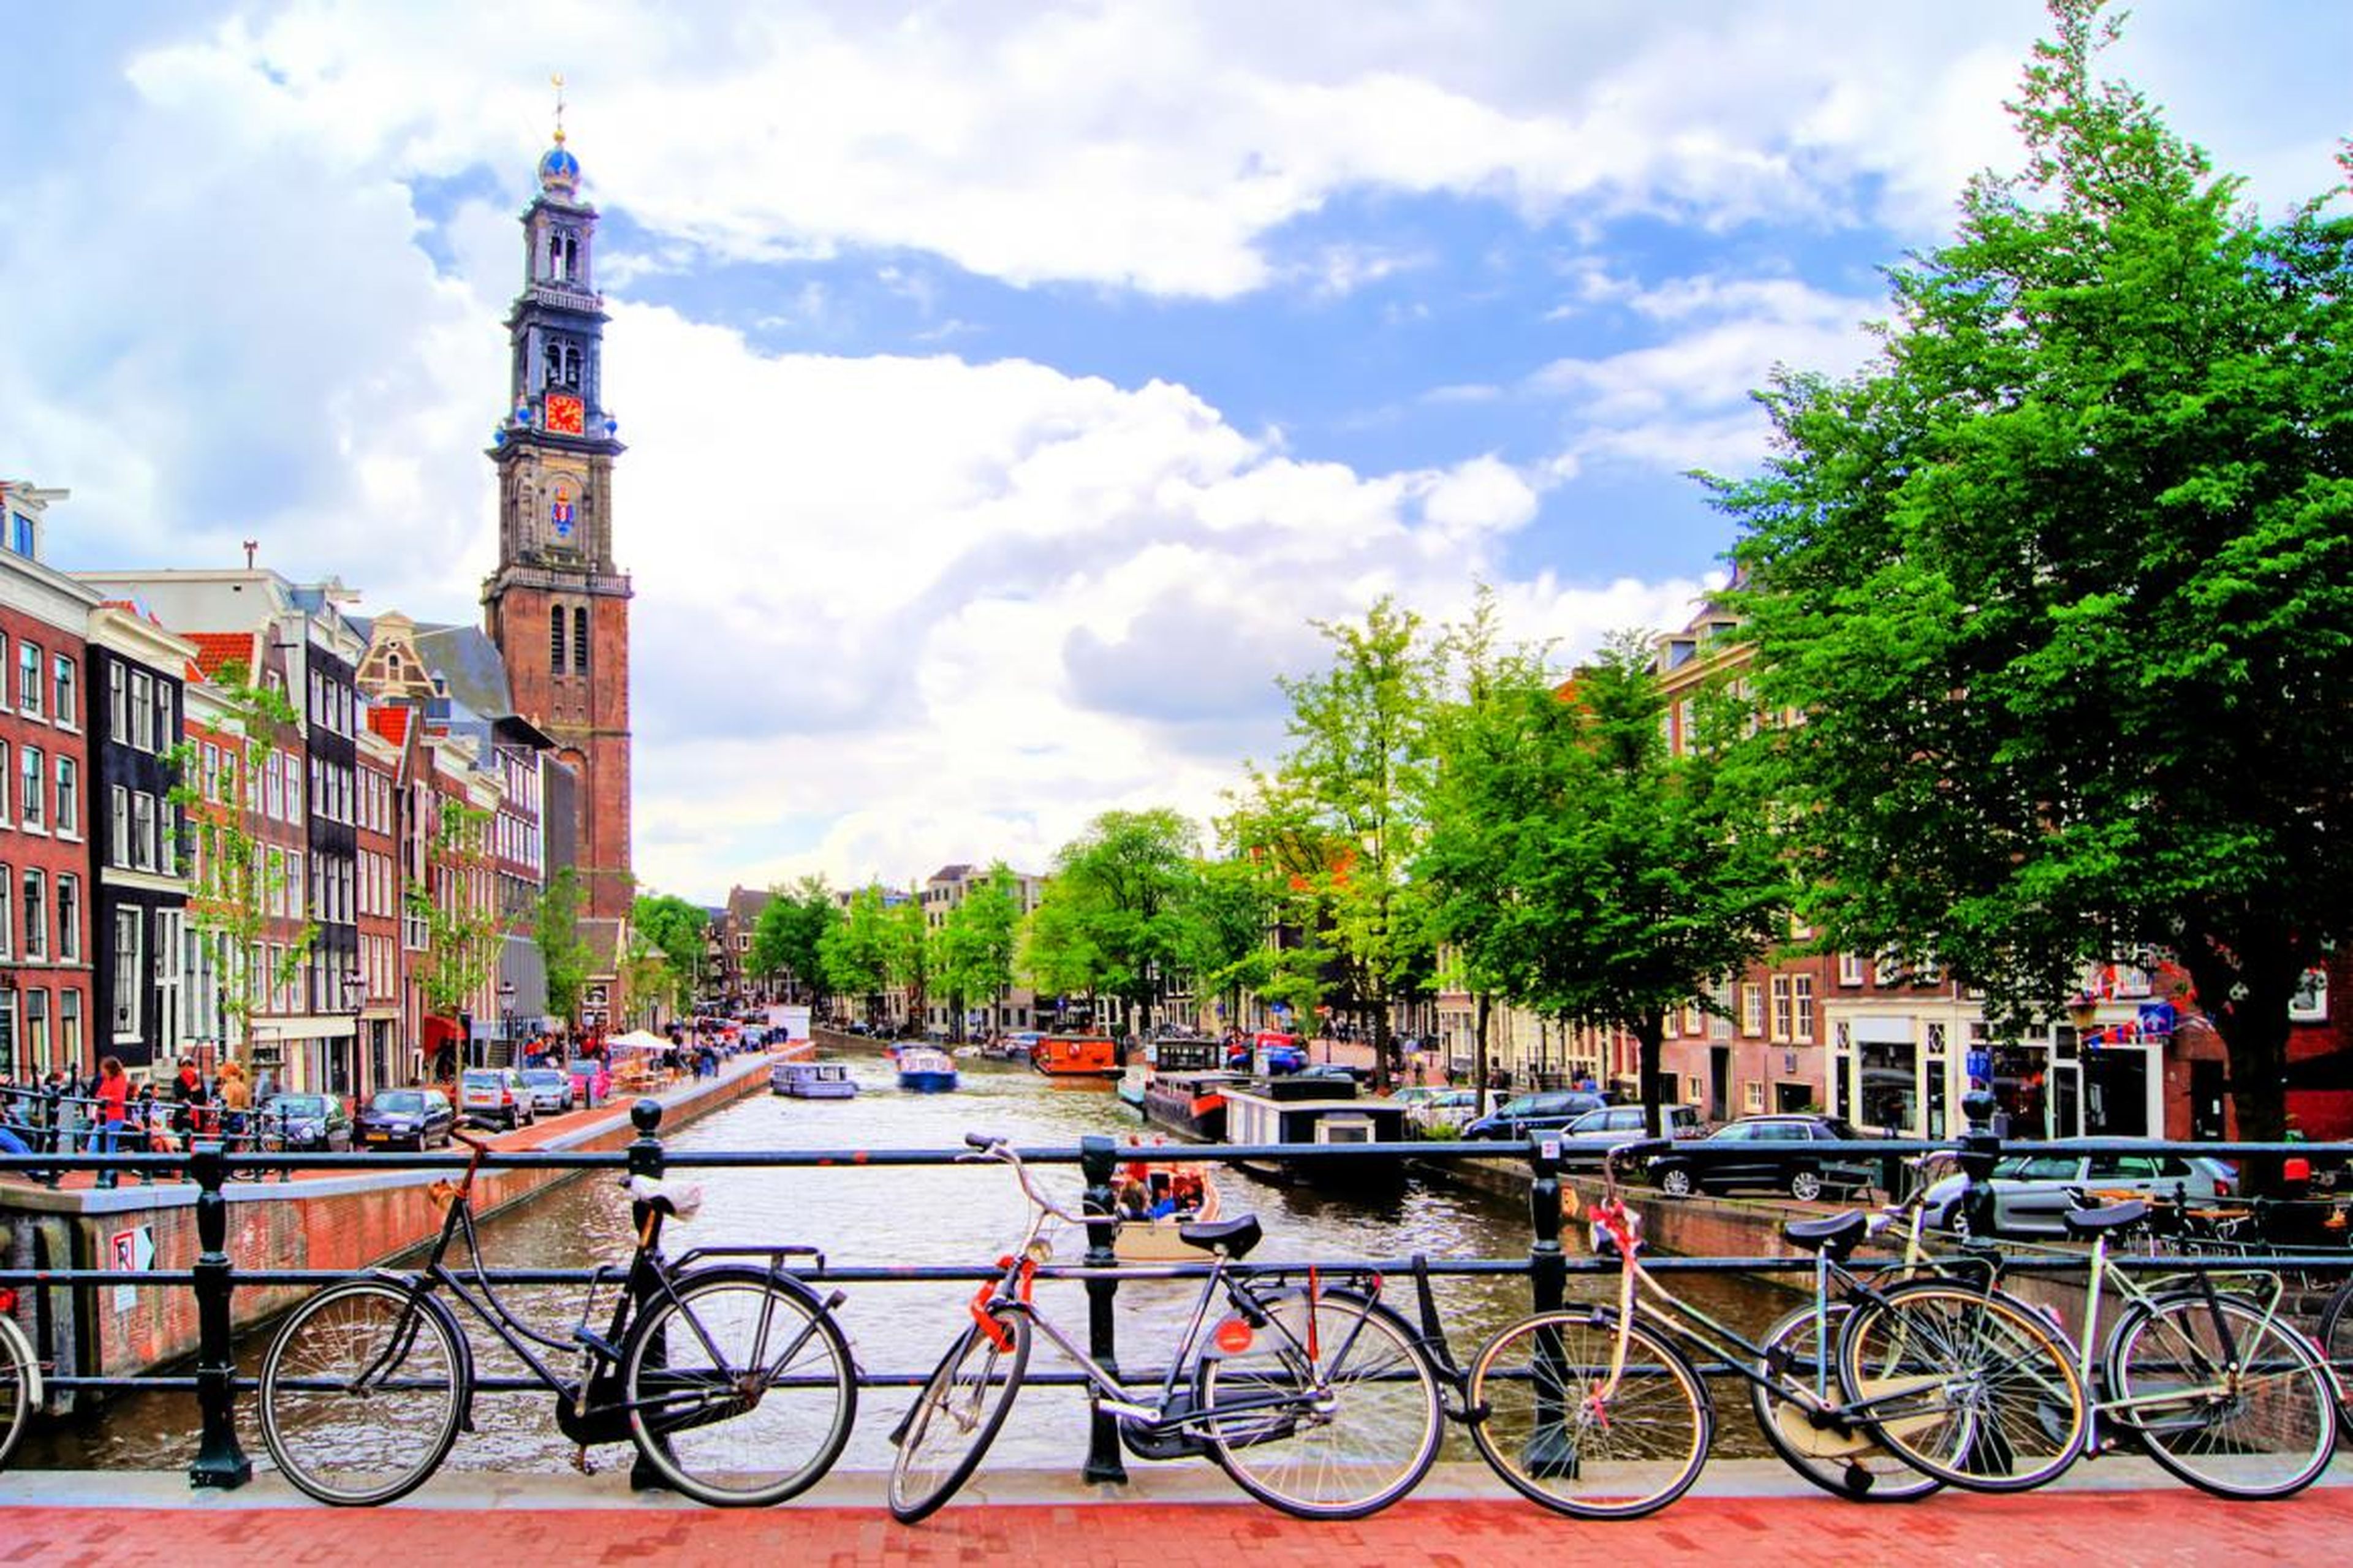 Es muy común ver millones de bicicletas por los canales de Amsterdam.